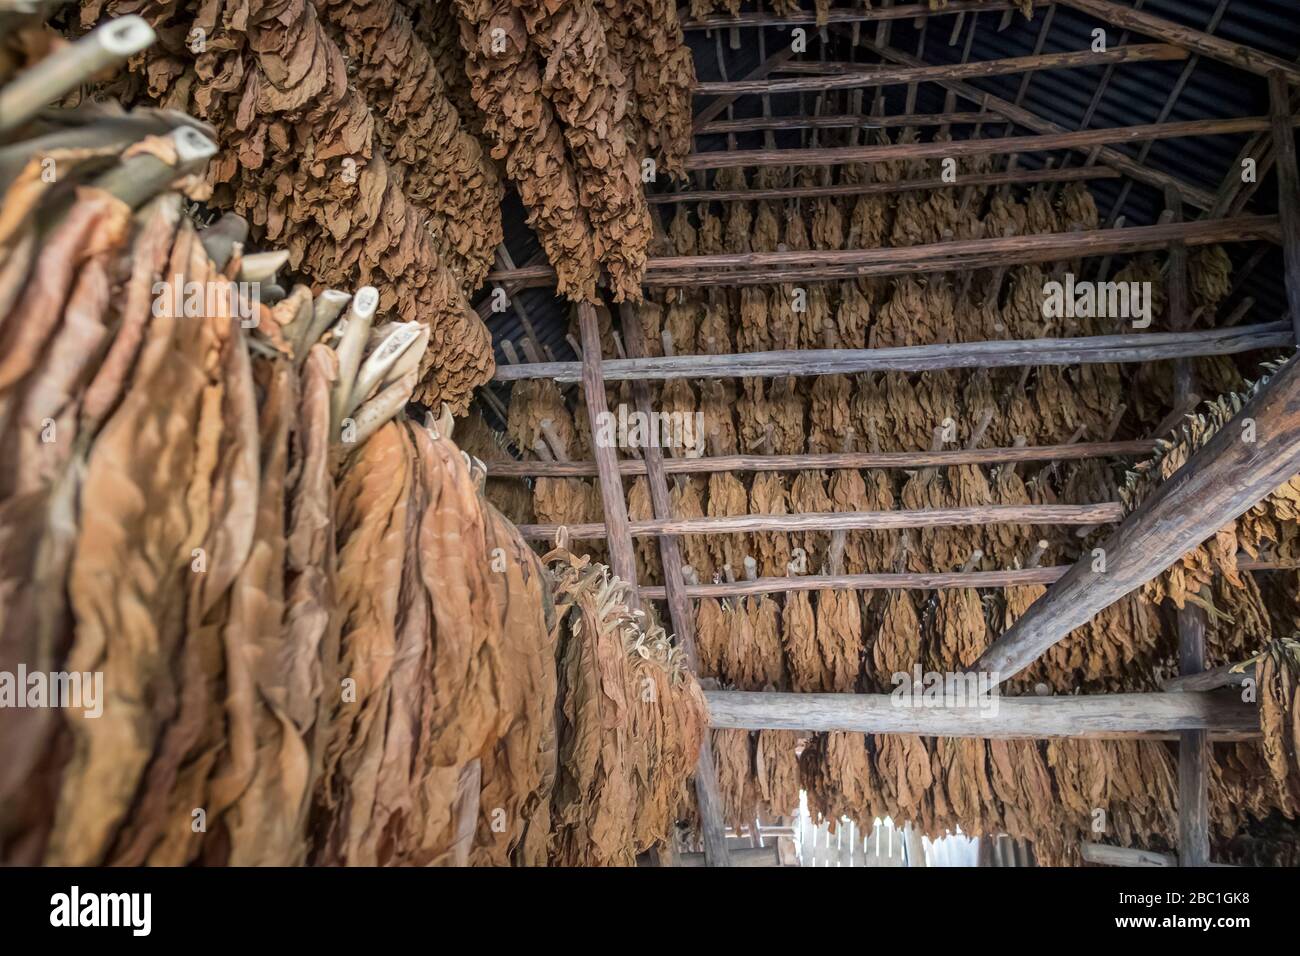 Hileras de hojas de tabaco secas, Valle de Vinales, Cuba Foto de stock